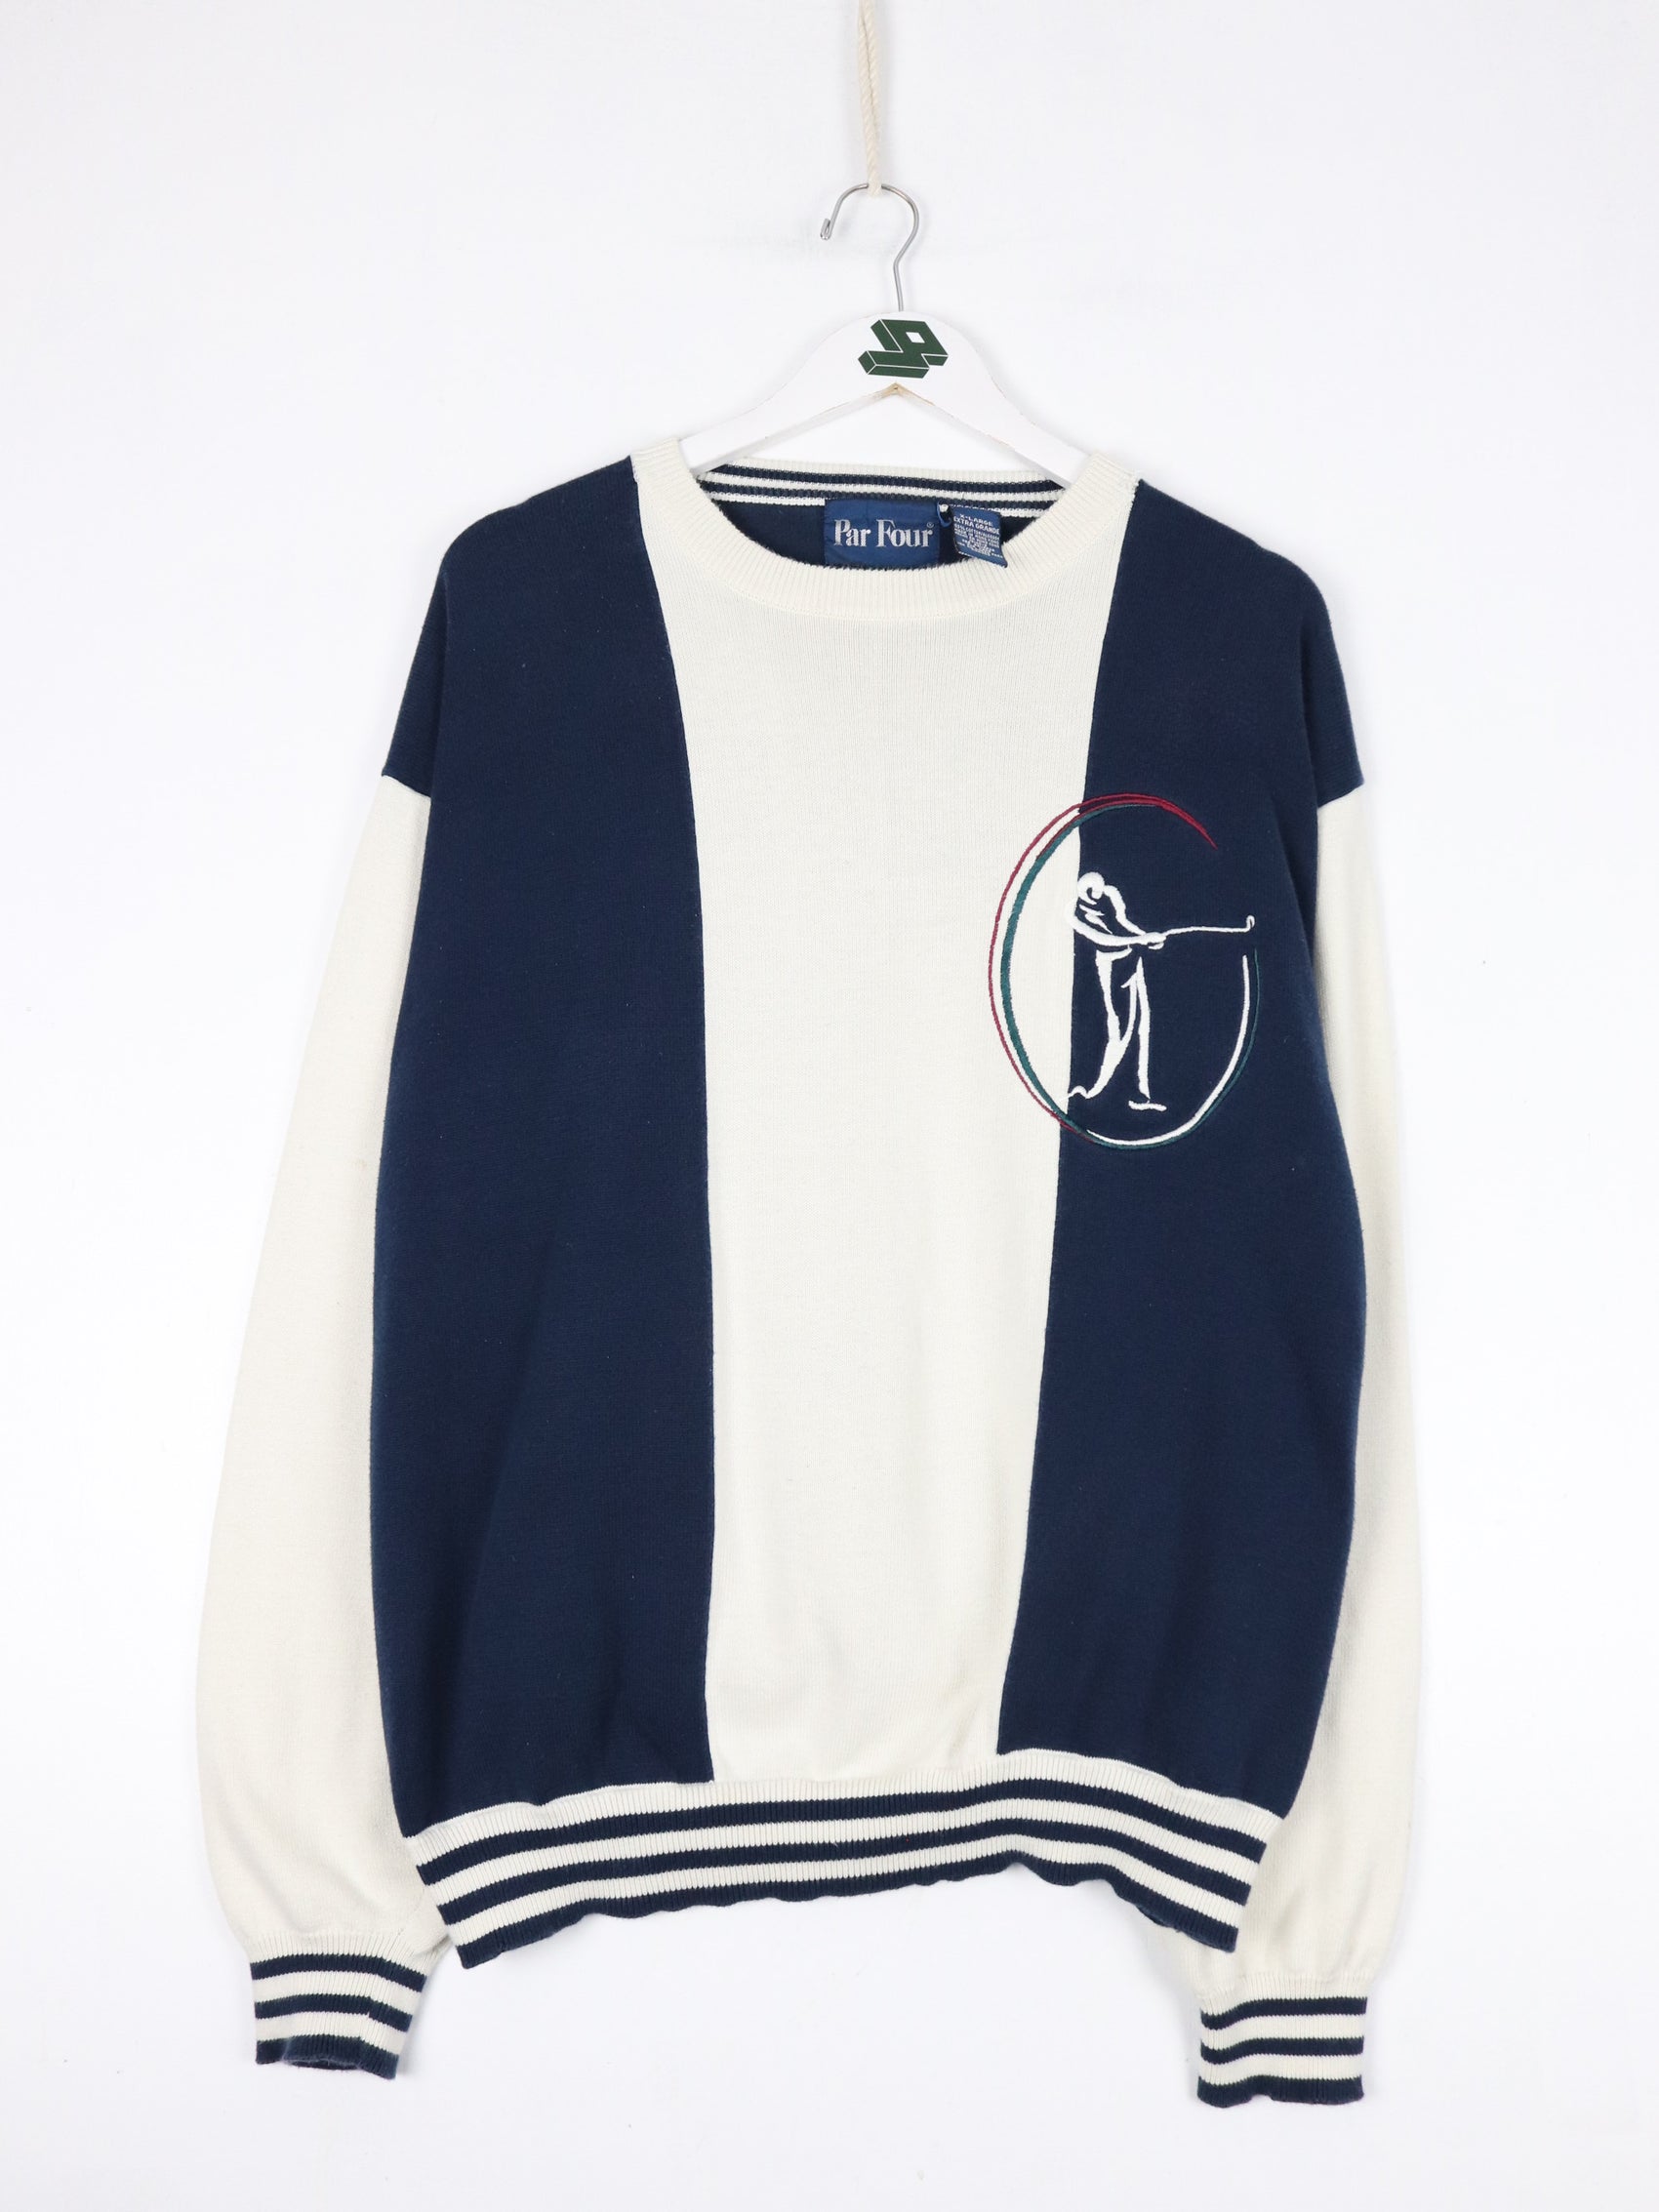 Vintage Par Four Sweater Fits Mens Large Blue White Knit Golf